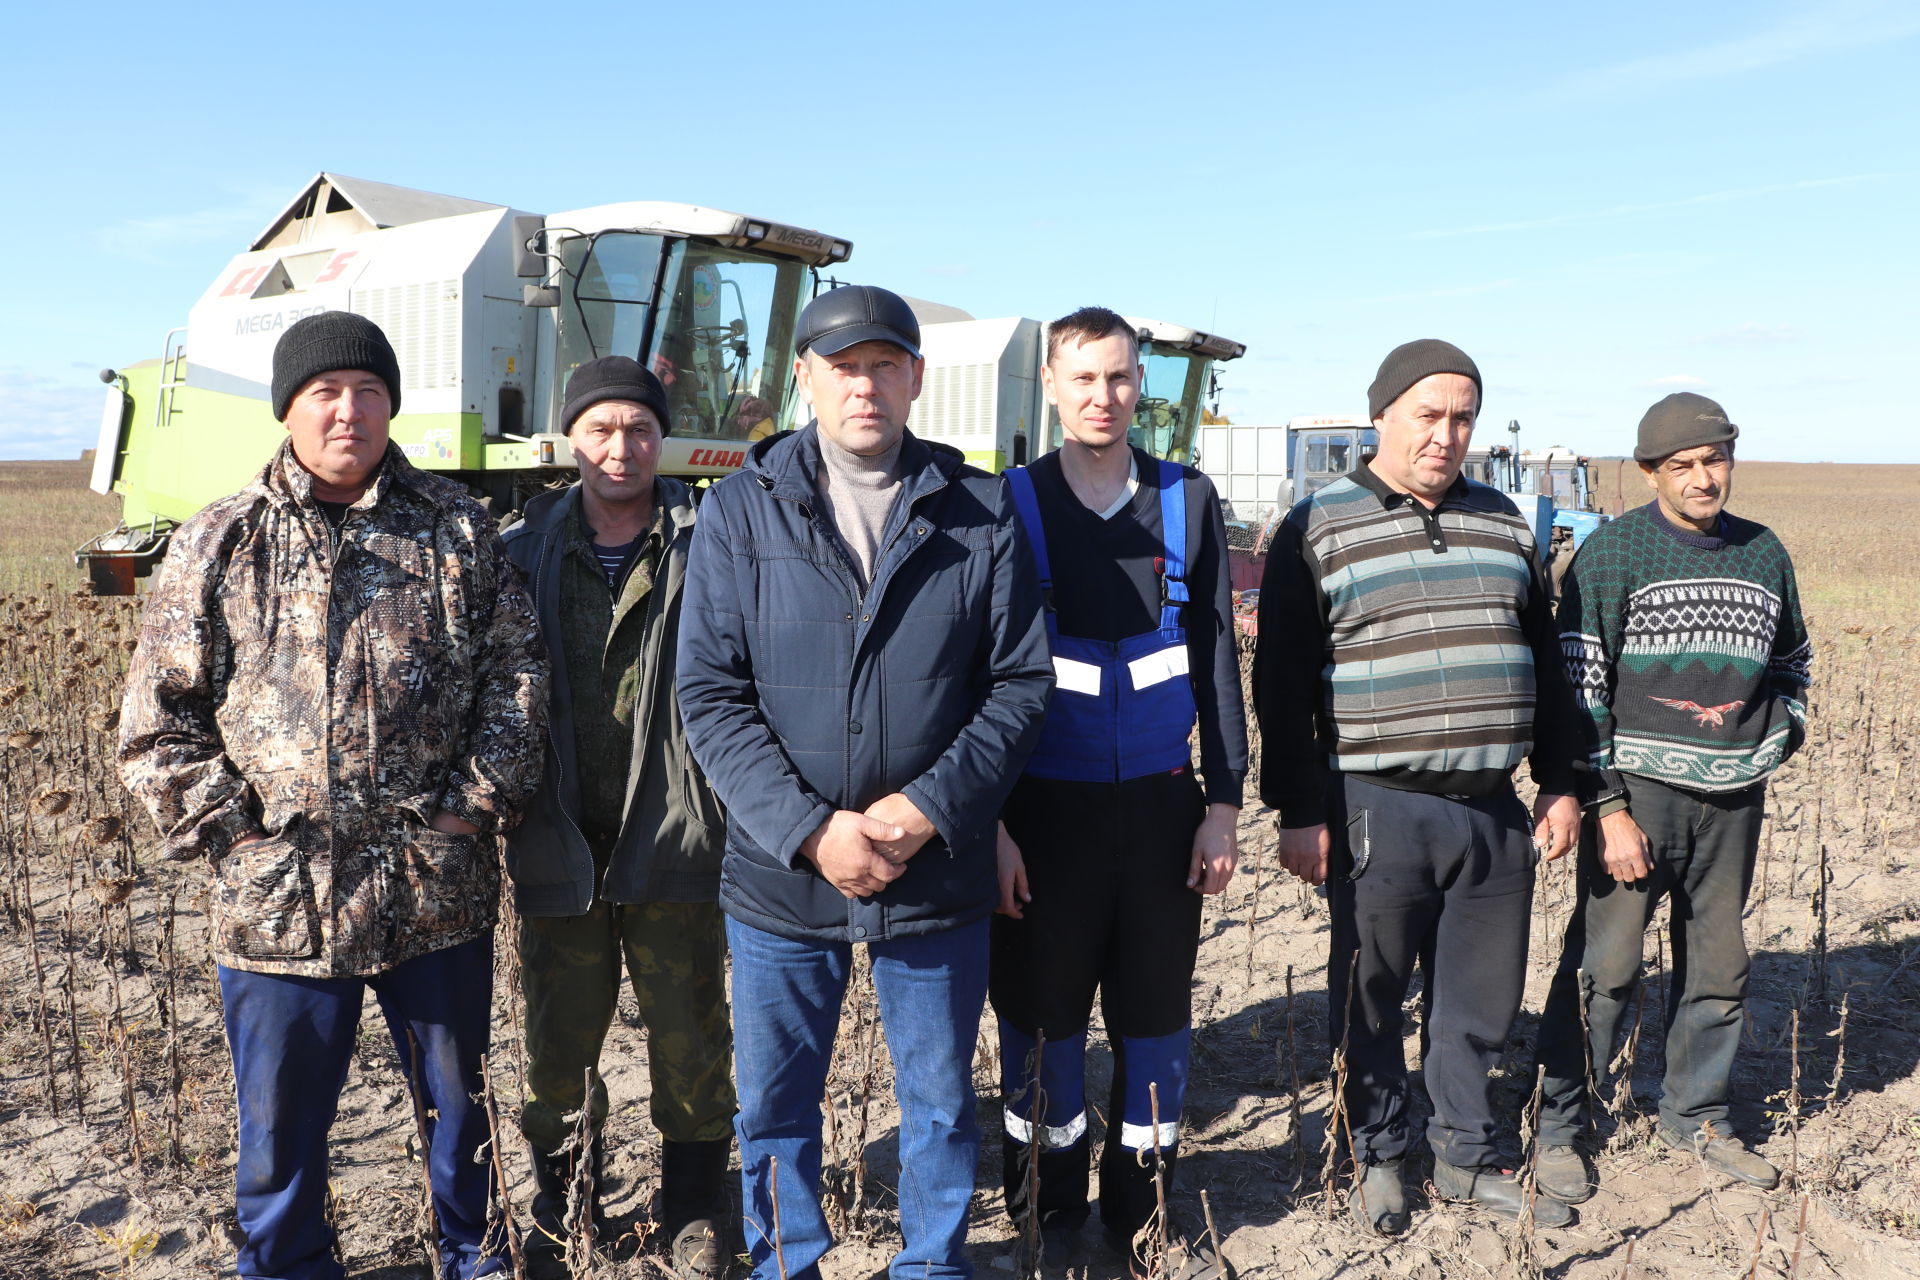 Әлки районы фермеры Андрей Ерусланов: “Без дүртәү башлаган идек тә бит”